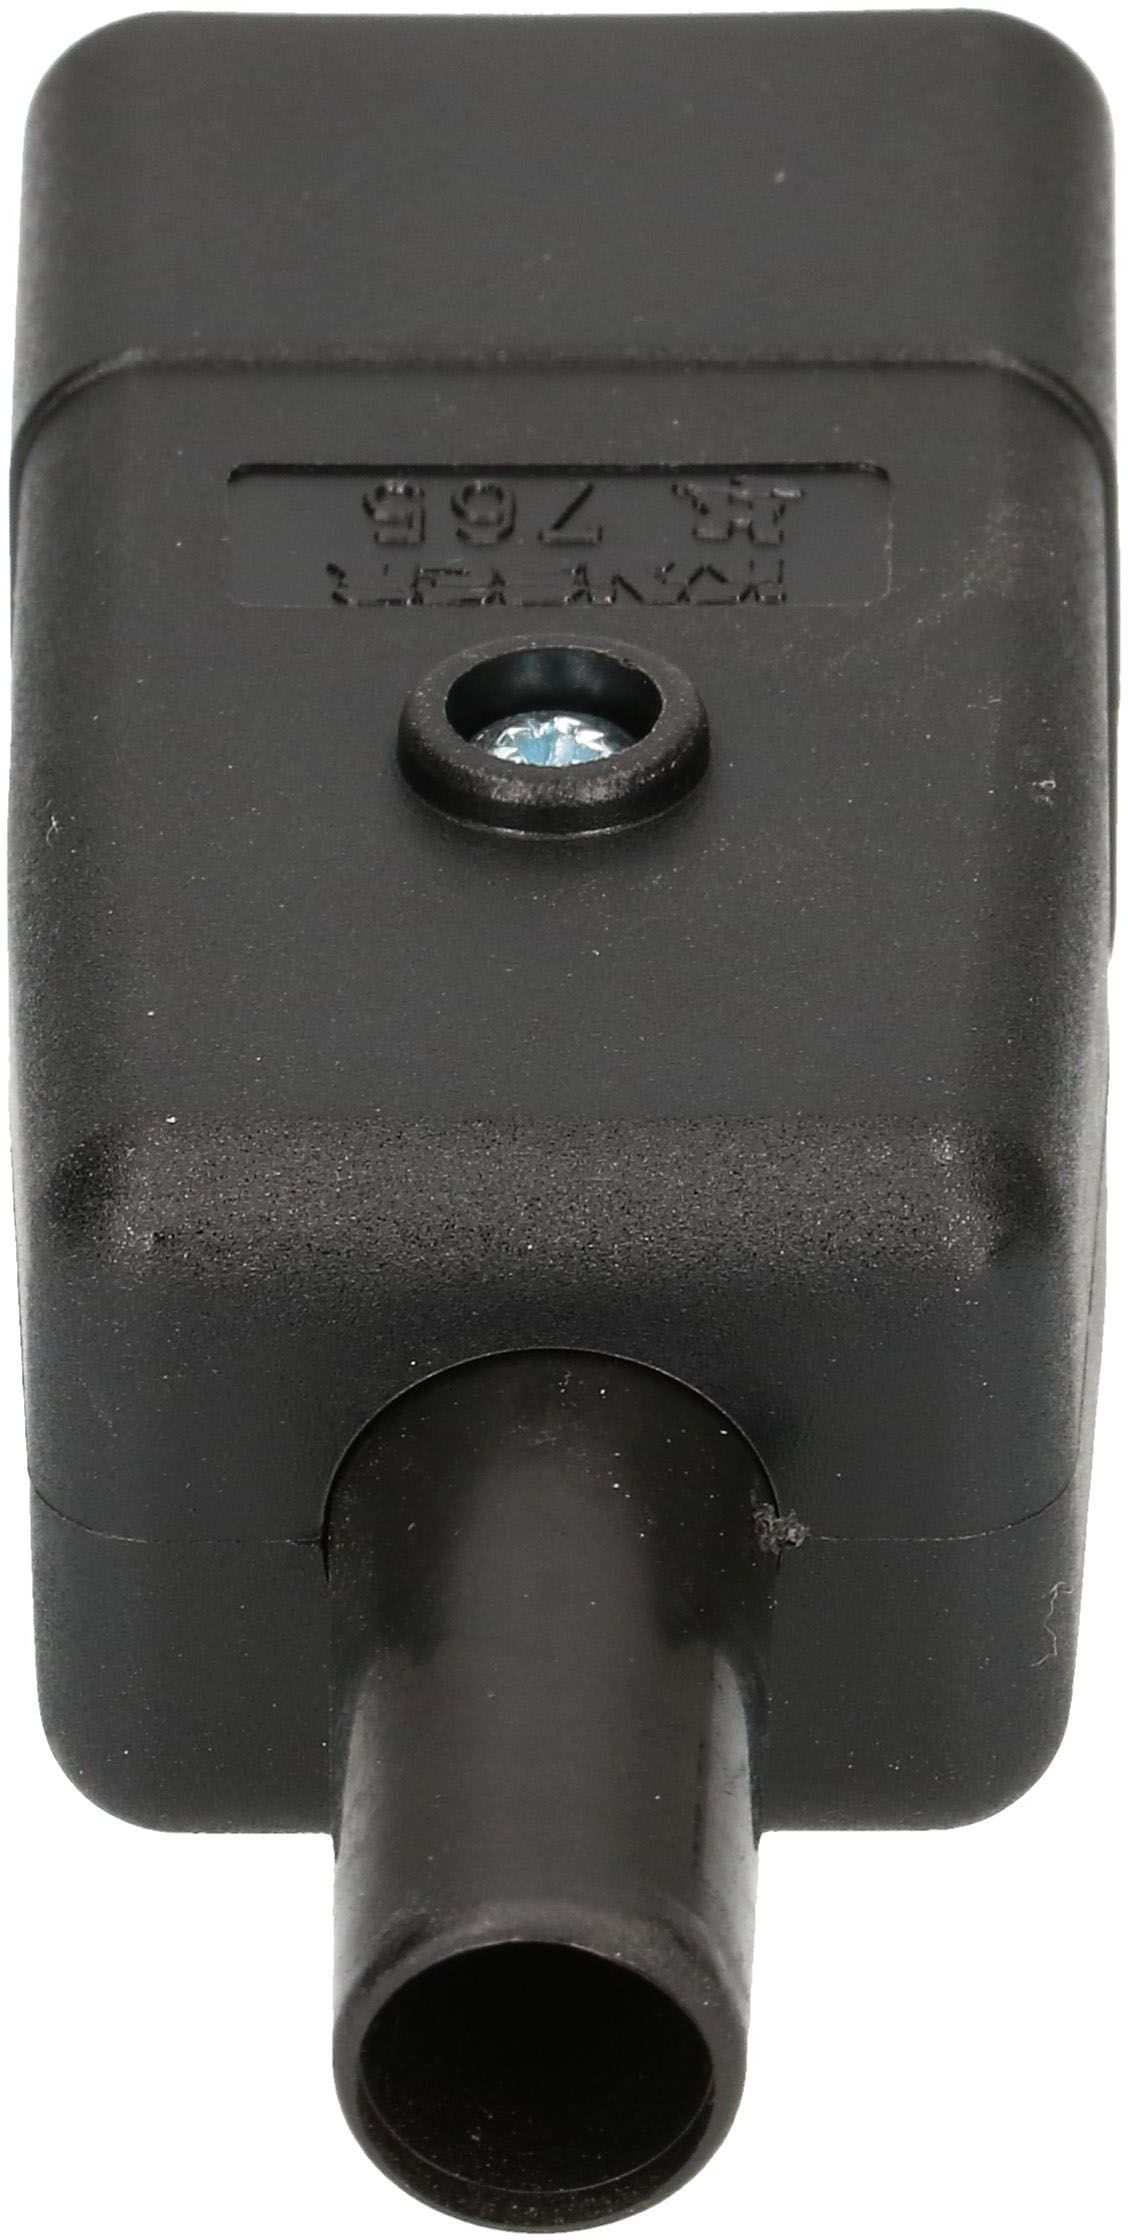 Apparatestecker Typ C20 3-polig schwarz